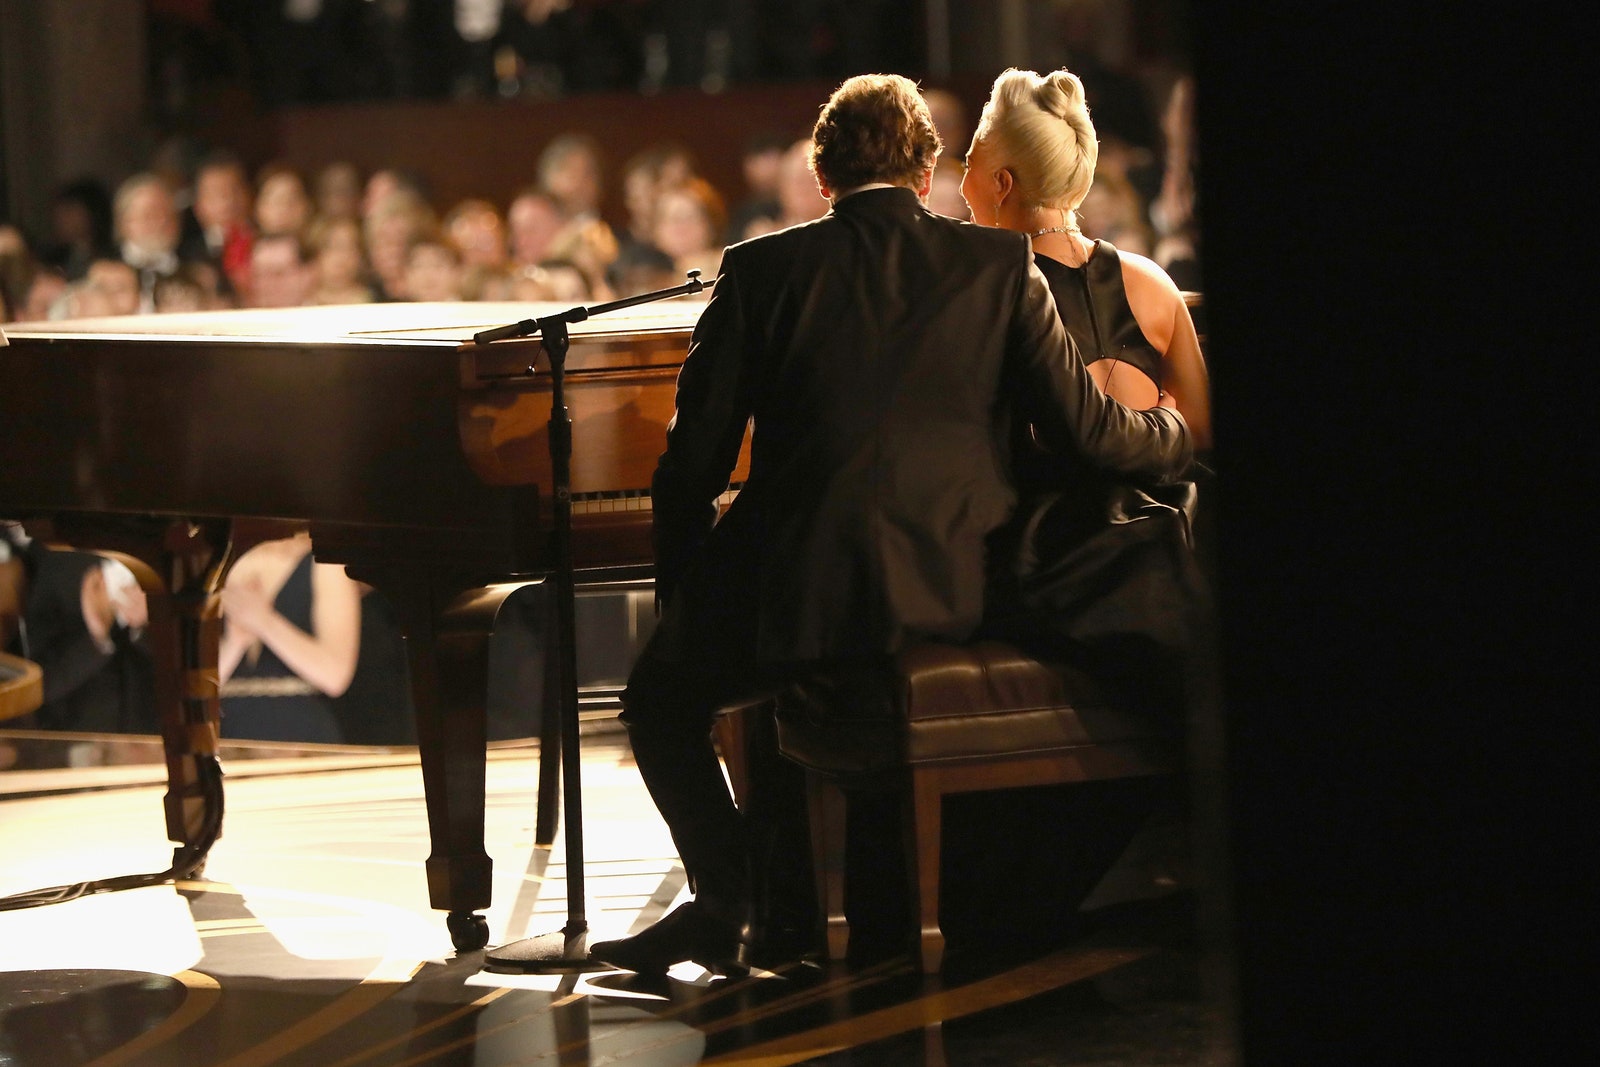 «Оскар» 2019 выступление Леди Гаги и Брэдли Купера стало самым трогательным моментом